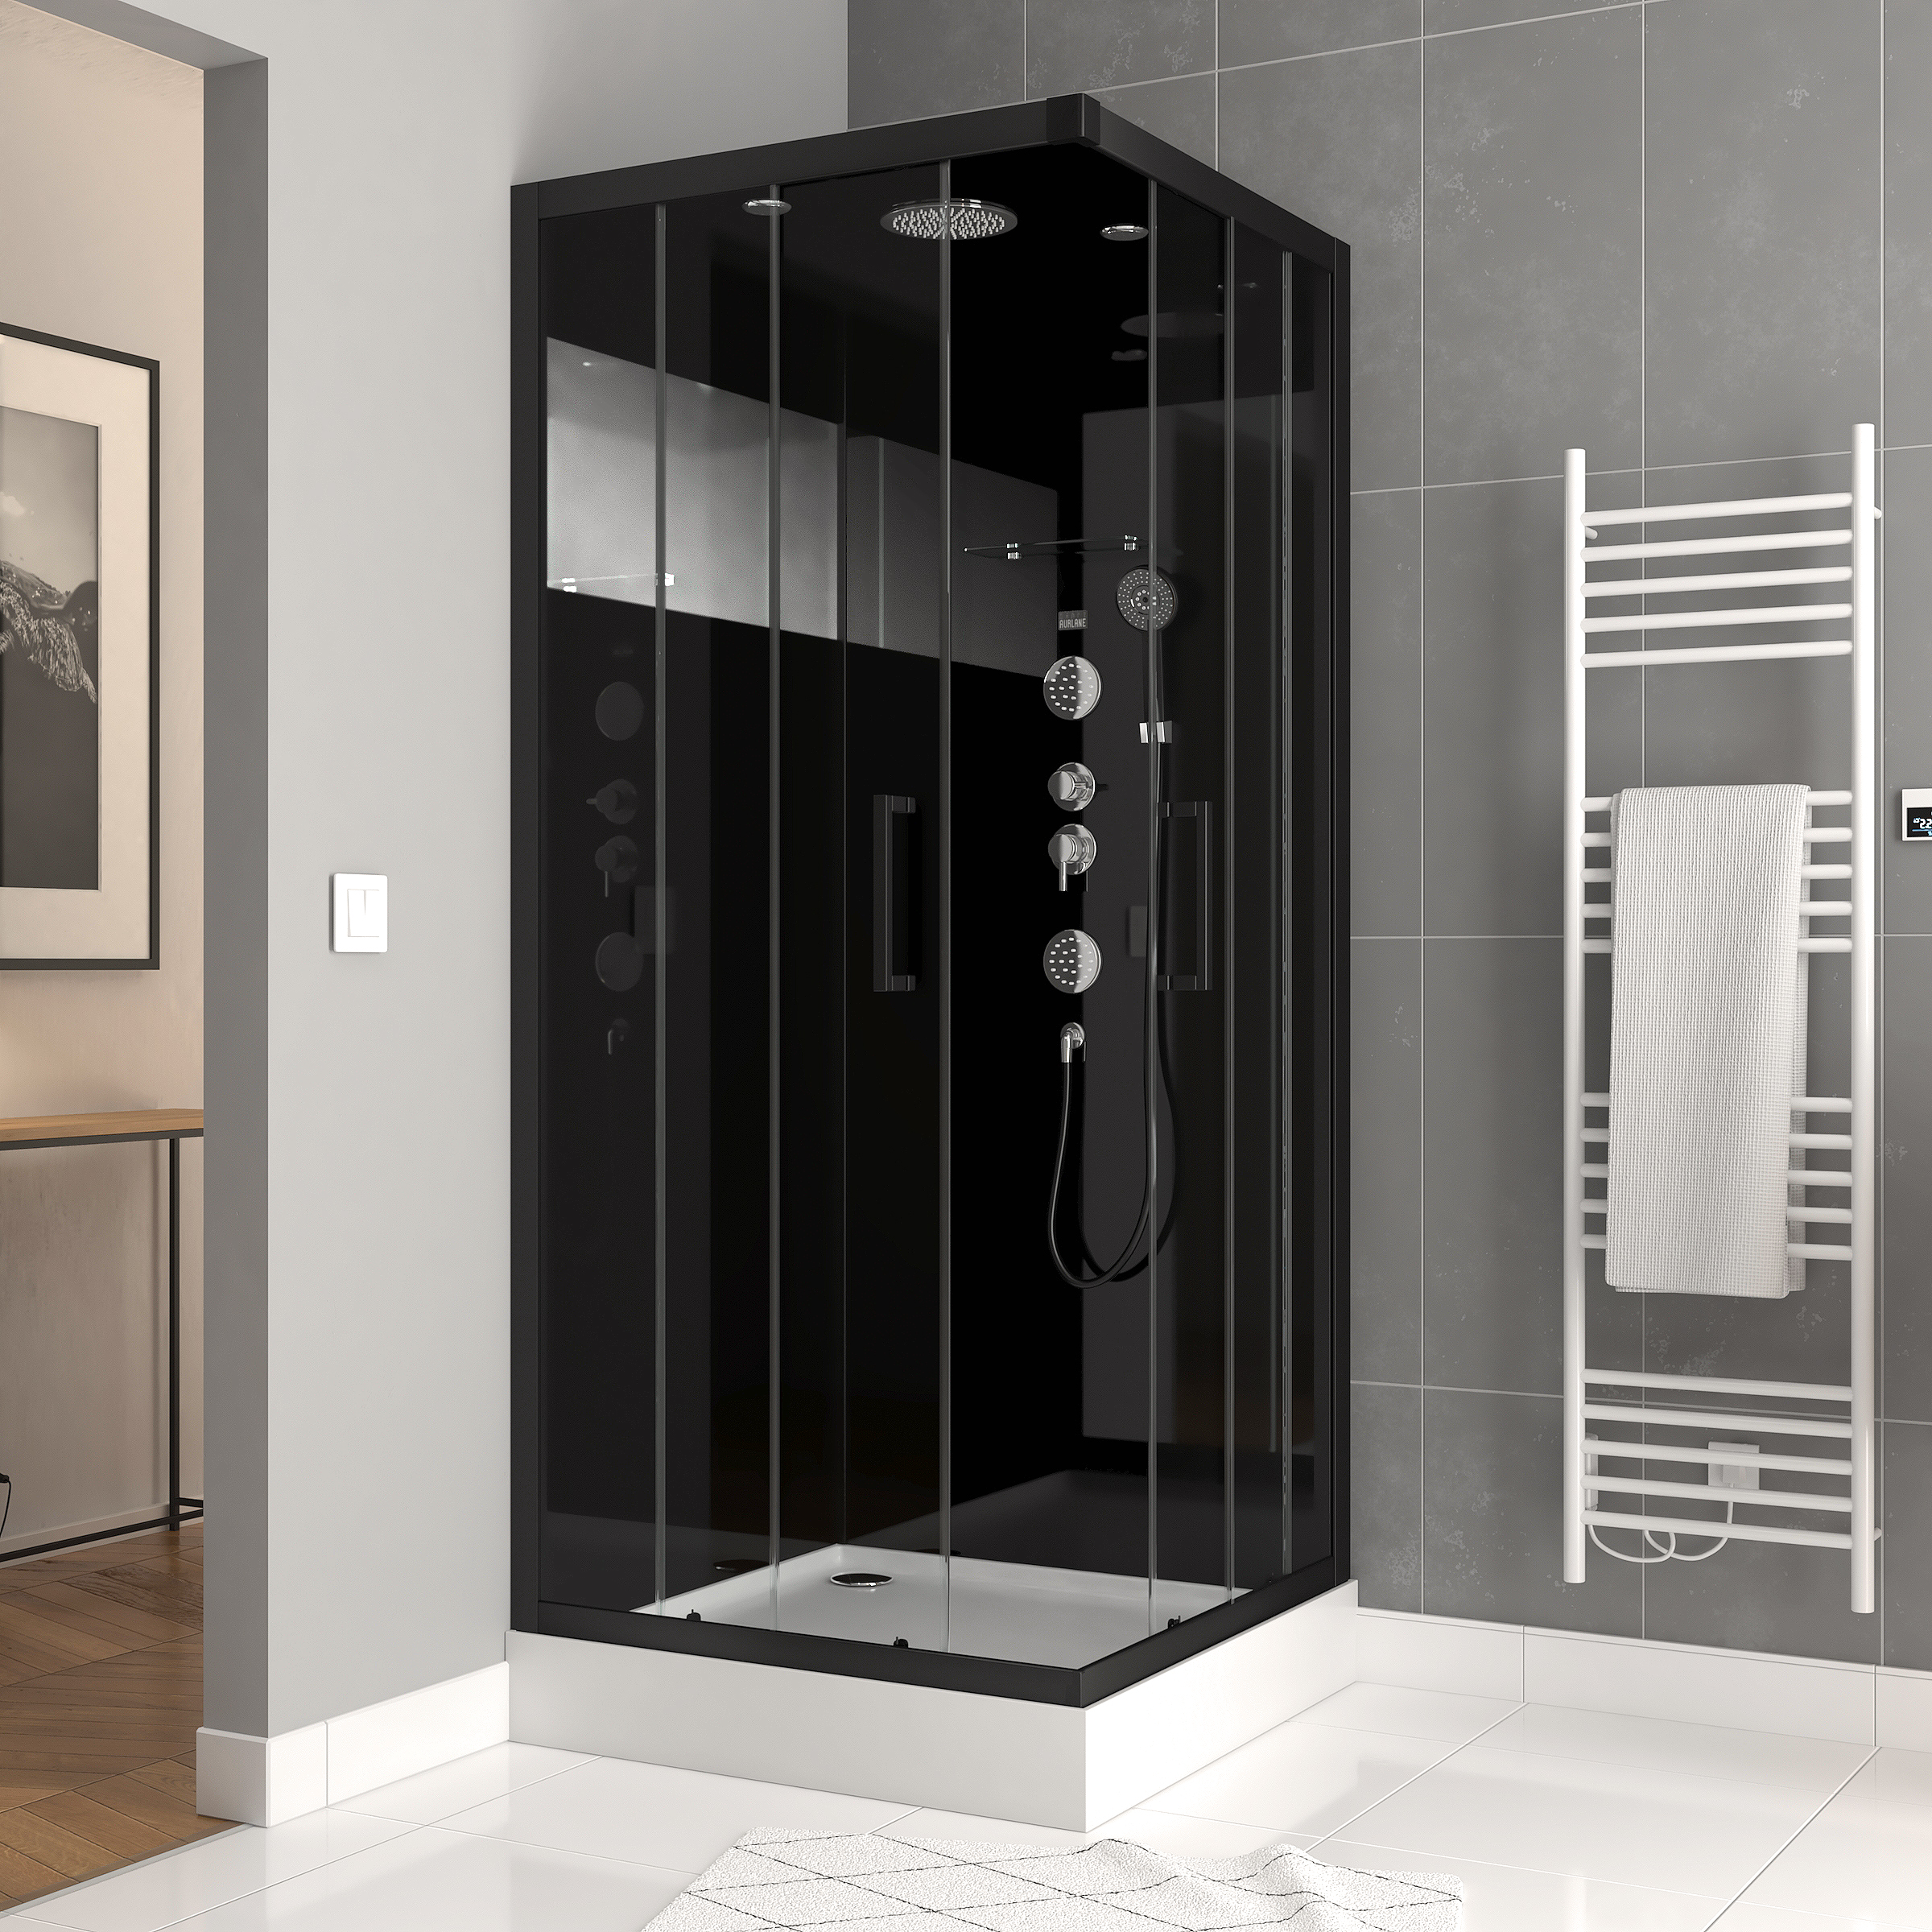 Remplacez votre colonne de douche ou choisissez un modèle plus moderne avec pommeau  fixe haut pour donner plus de cachet à votre salle de bain.